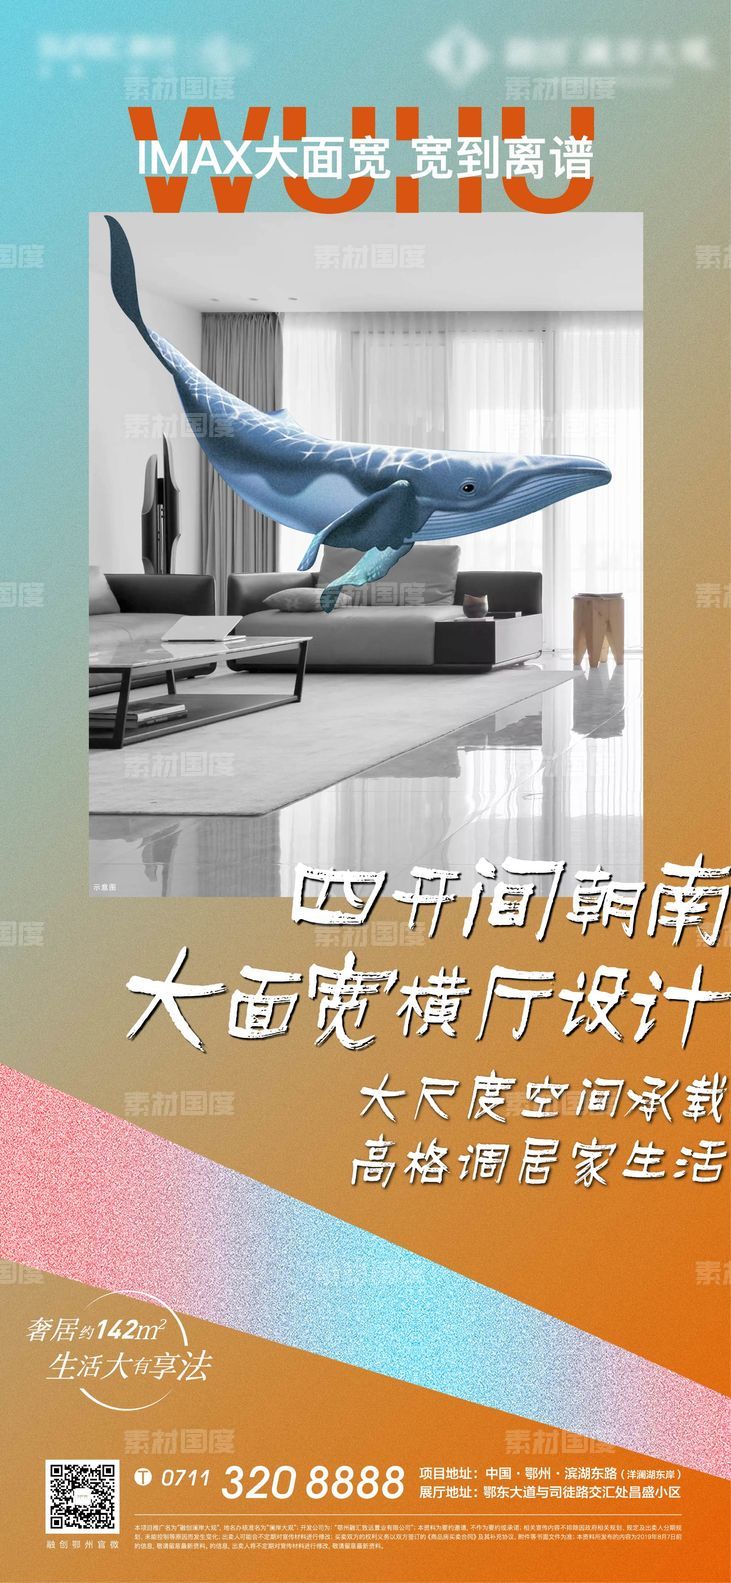 宽居 地产 鲸鱼 大象 房间 客厅 动物 色彩 质感